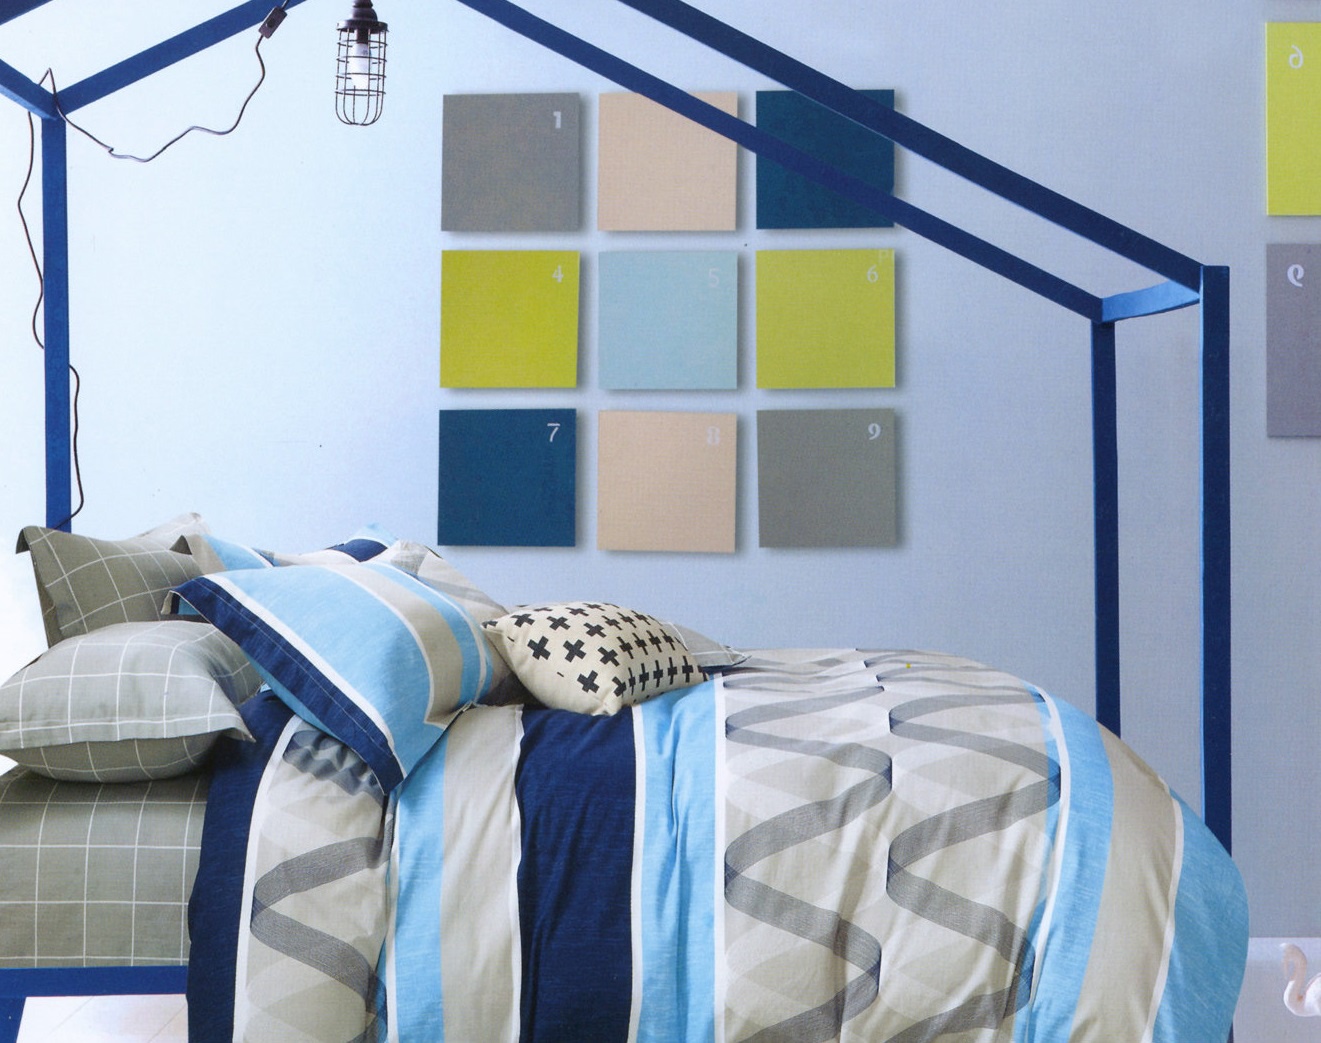 Комплект постельного белья Дом Текстиля SULYAN Тайлер, белый, синий, темно-синий, голубой, серый